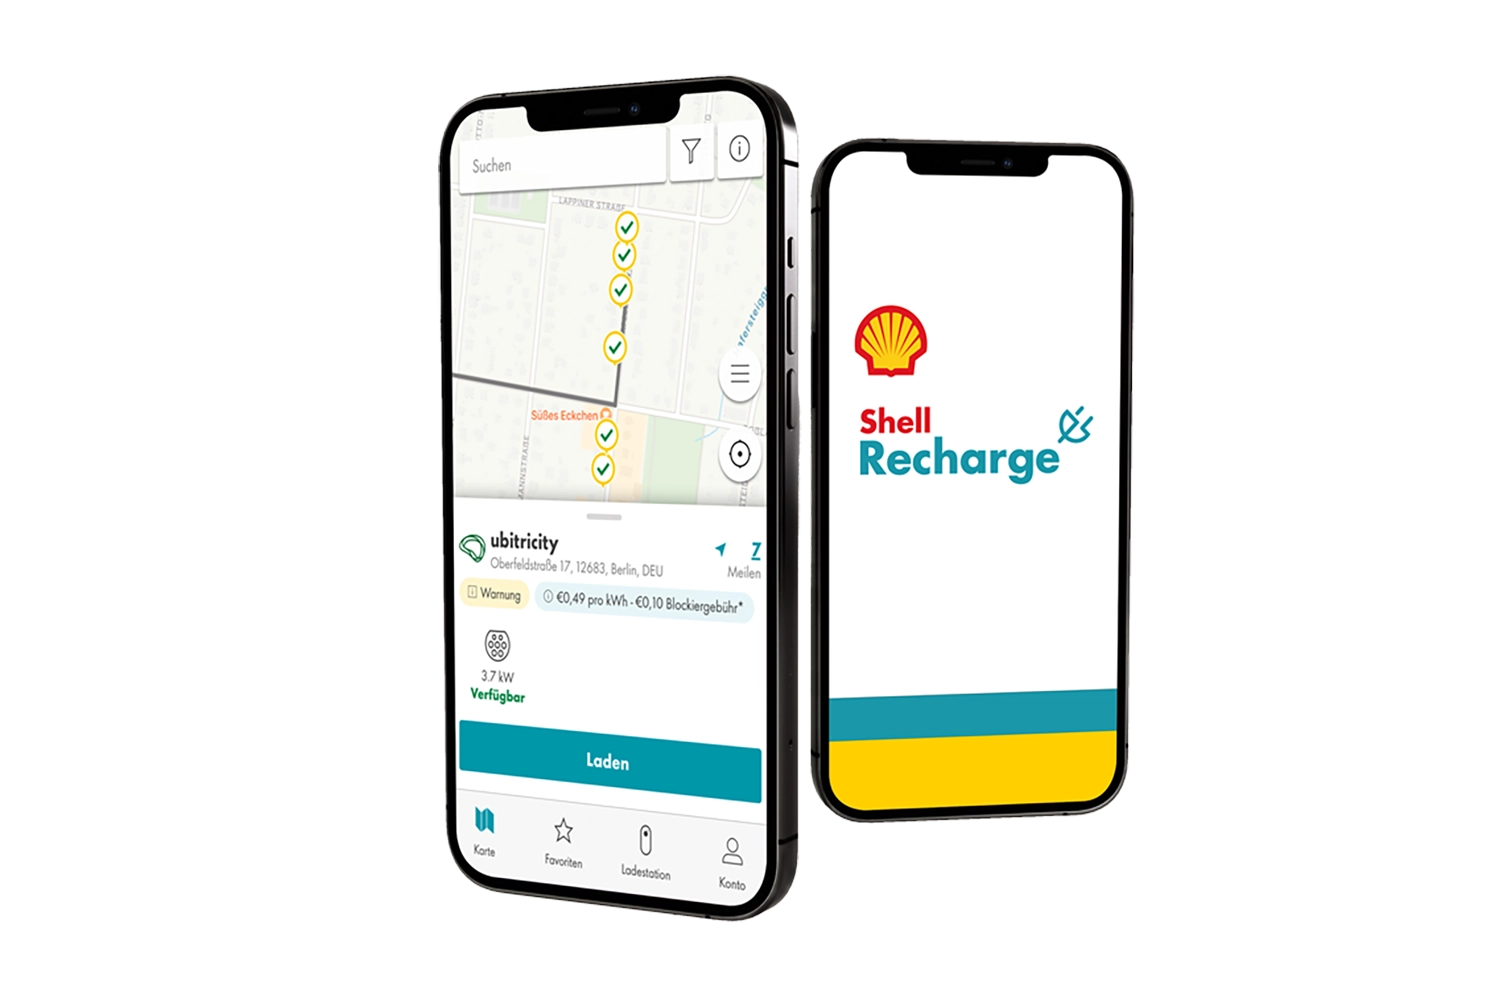 Benutzeroberläche der Shell Recharge-App für das Laden eines E-Autos an einer öffentlichen ubitricity E-Ladestation in Berlin, Deutschland